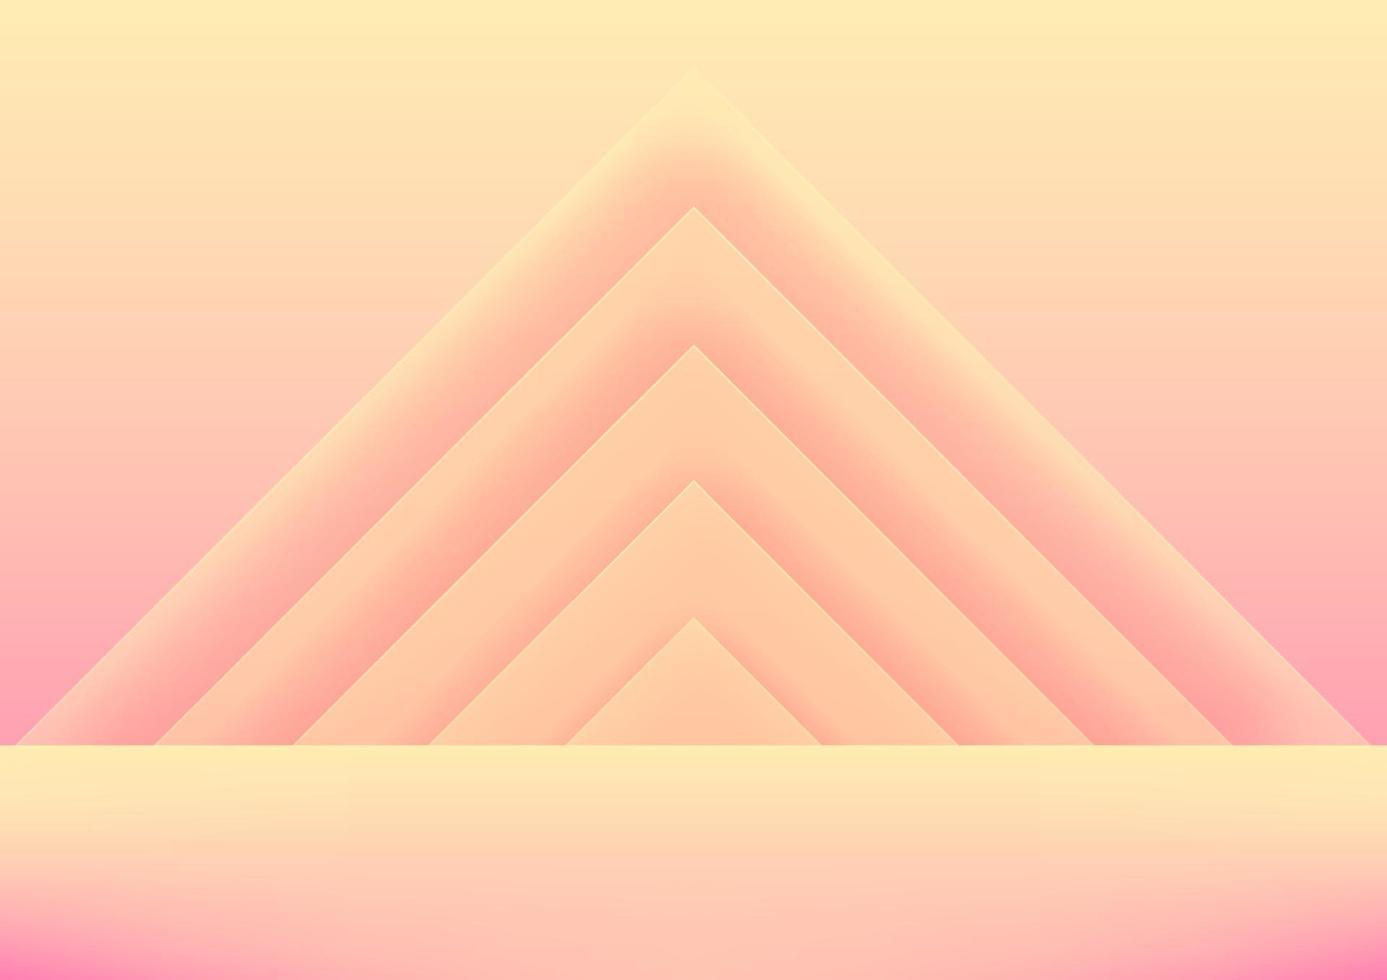 pared de estudio rosa y amarilla realista, interior de habitación vacía en formas geométricas de triángulo mínimo 3d. vector